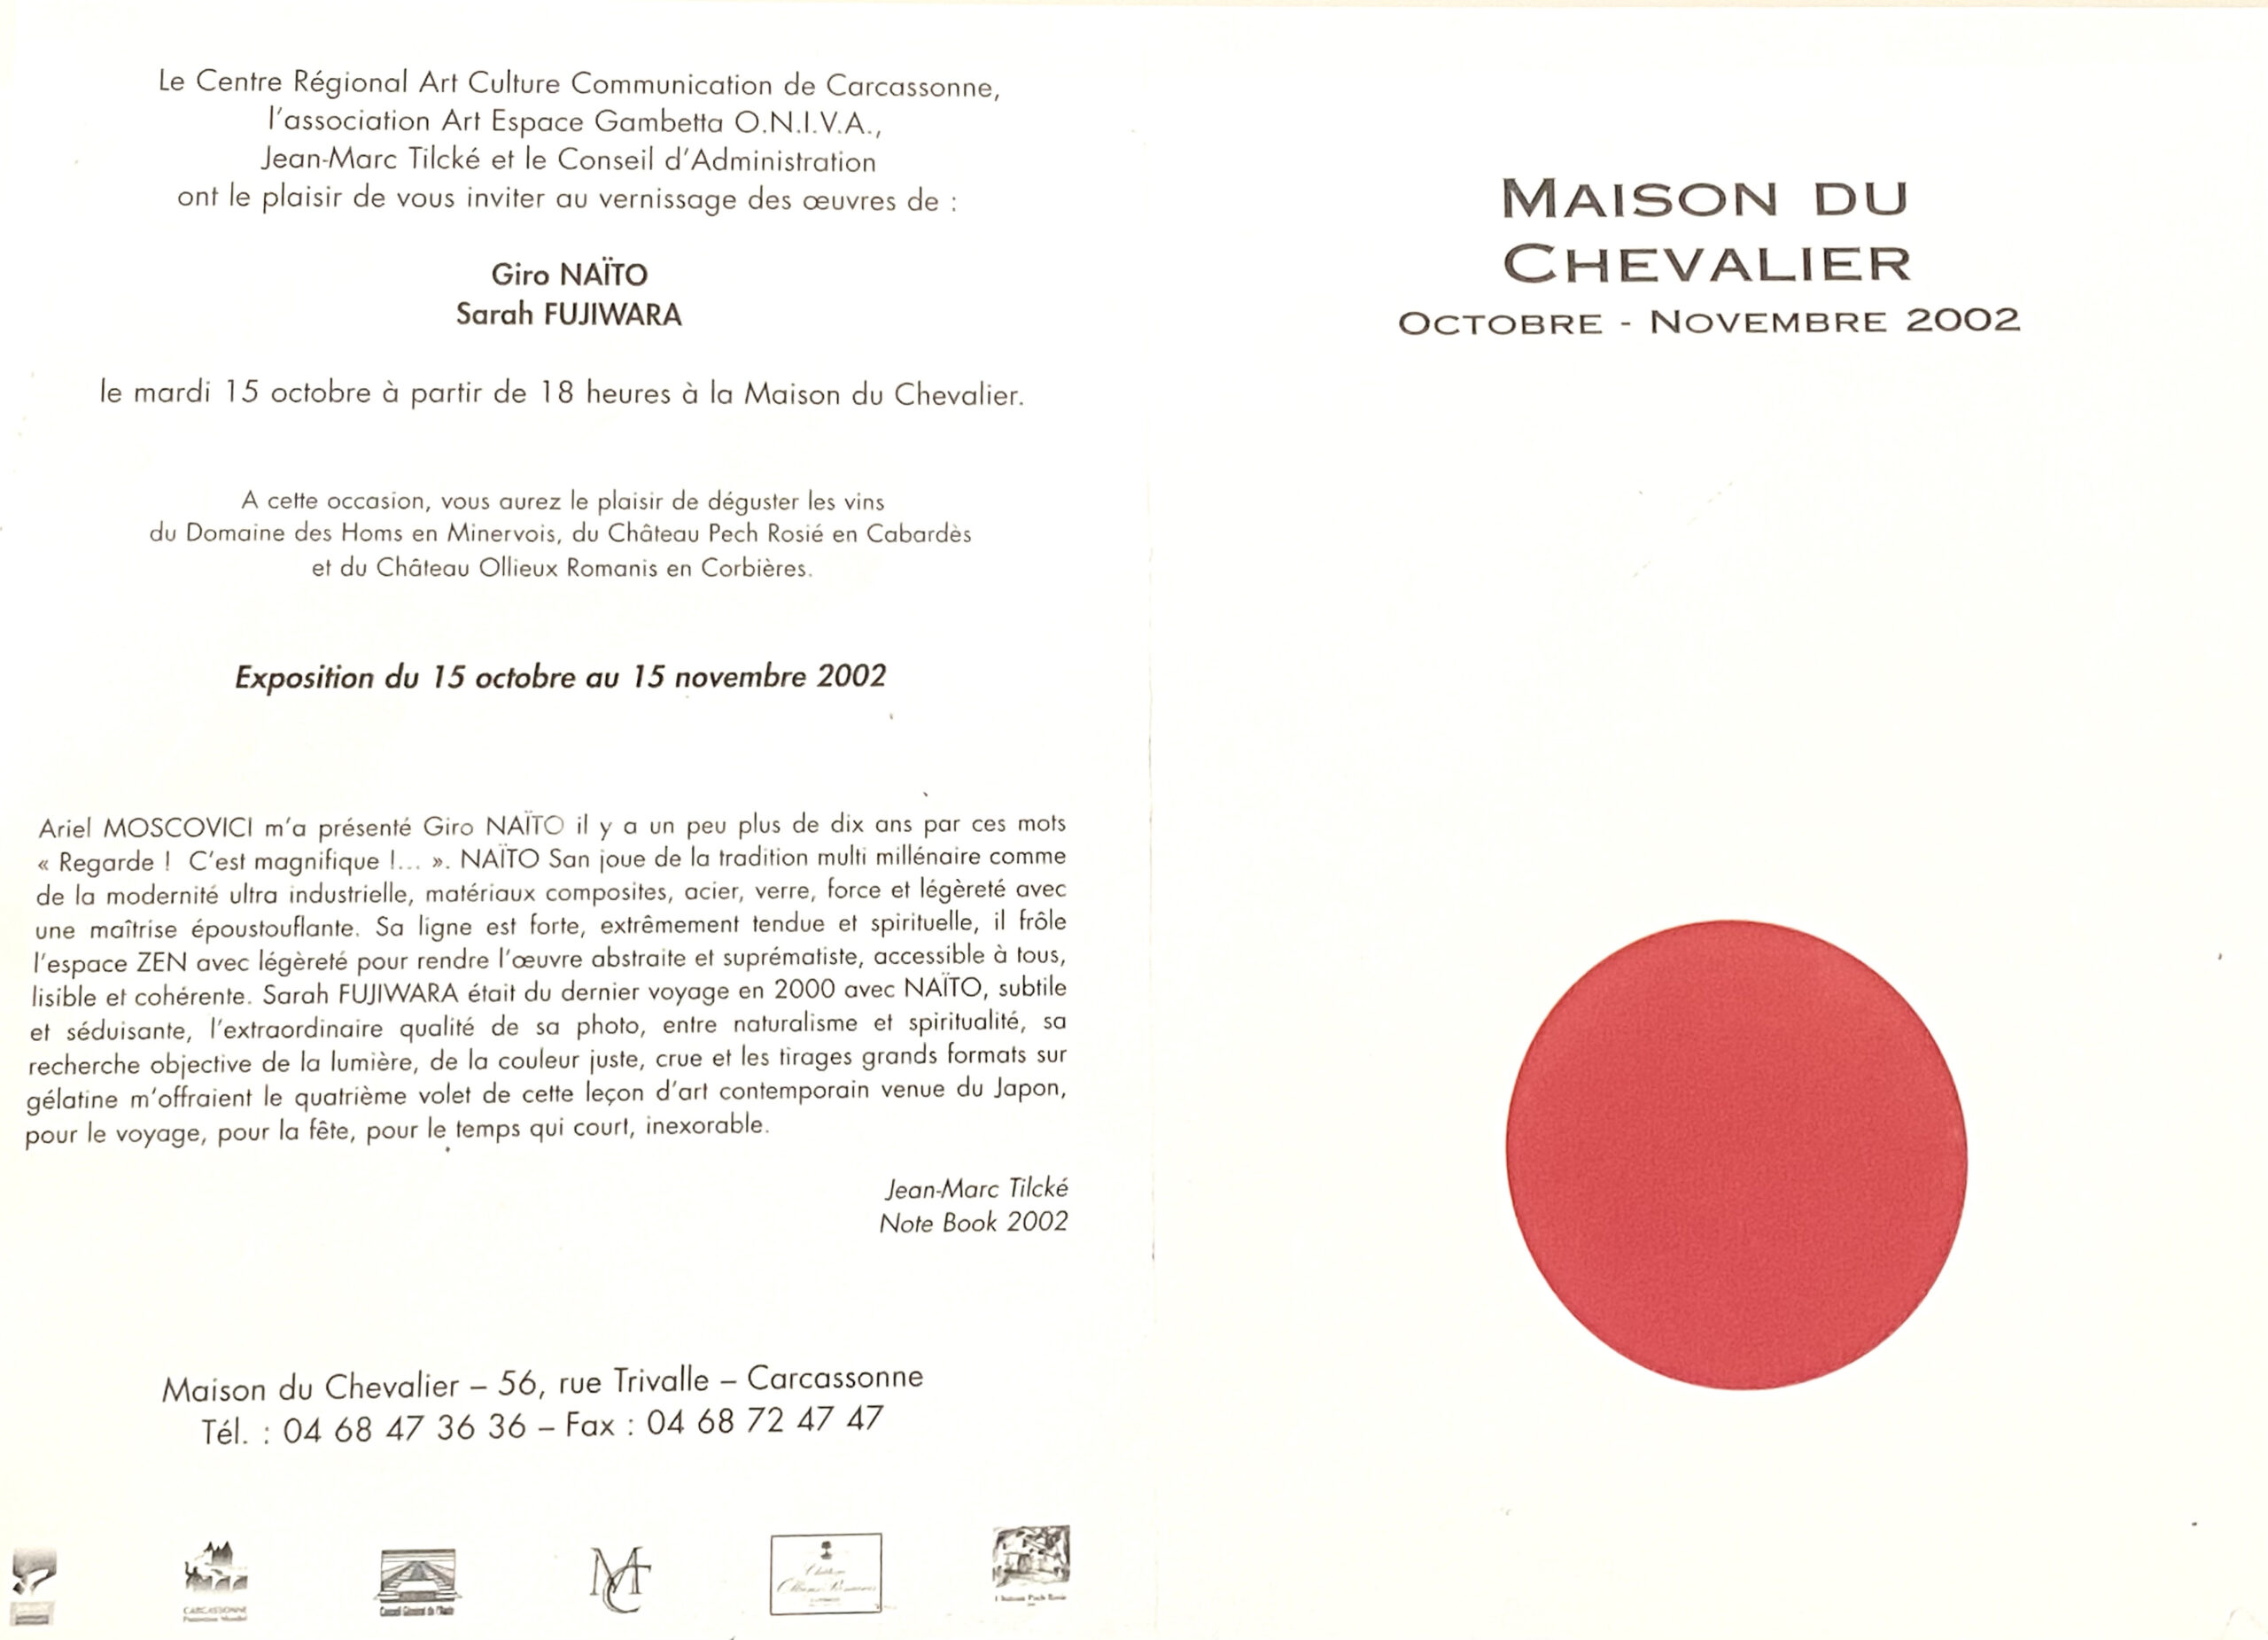 Giro NAITO / Sarah FUJIWARA Exhibition, MAISON DU CHEVALIER, Carcassone France, Oct 15 – Nov. 15, 2002, solo show